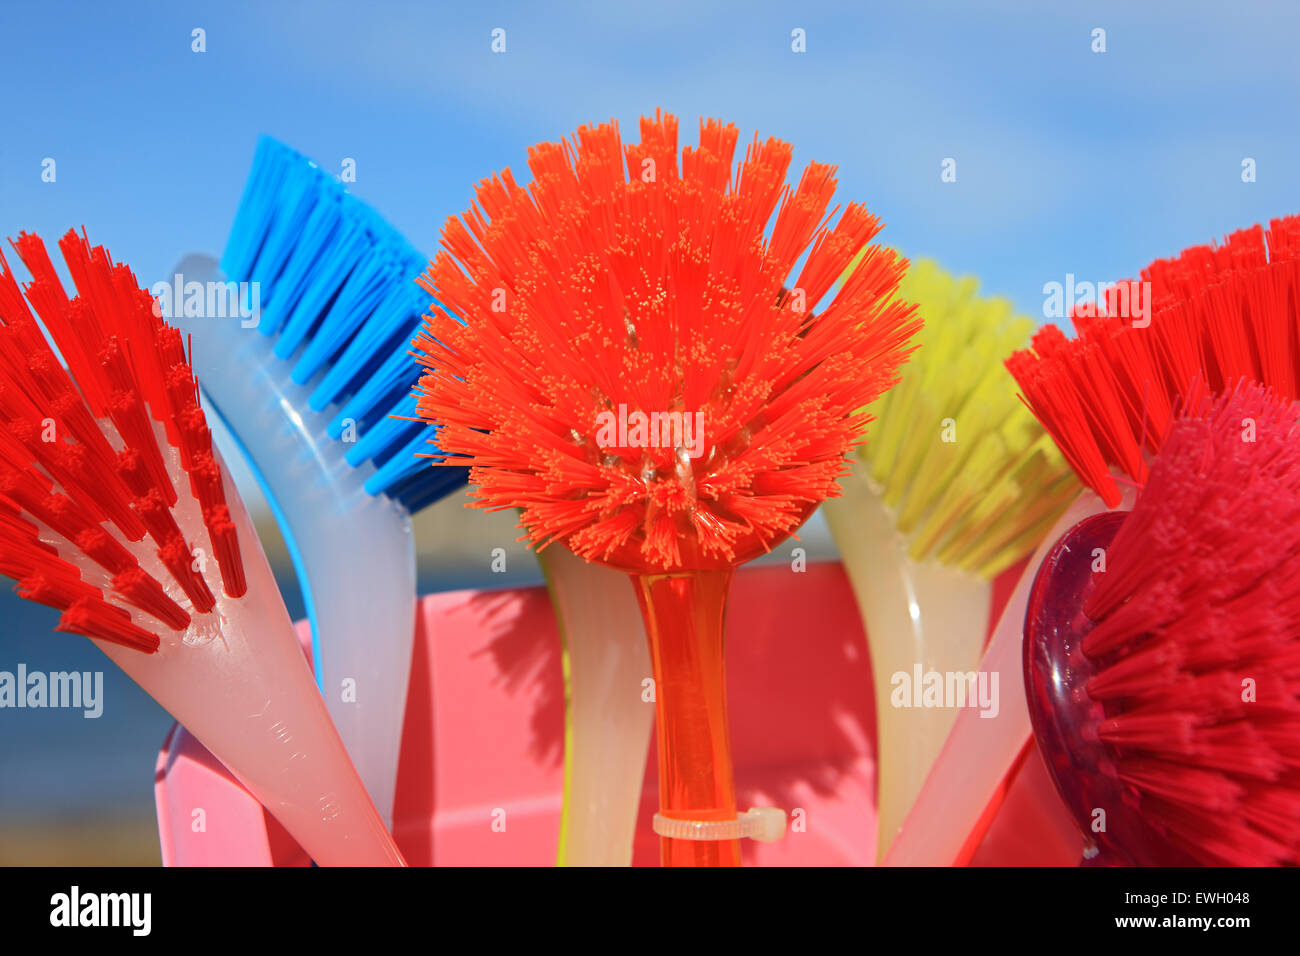 Cepillos para lavar la vajilla de colores brillantes Foto de stock